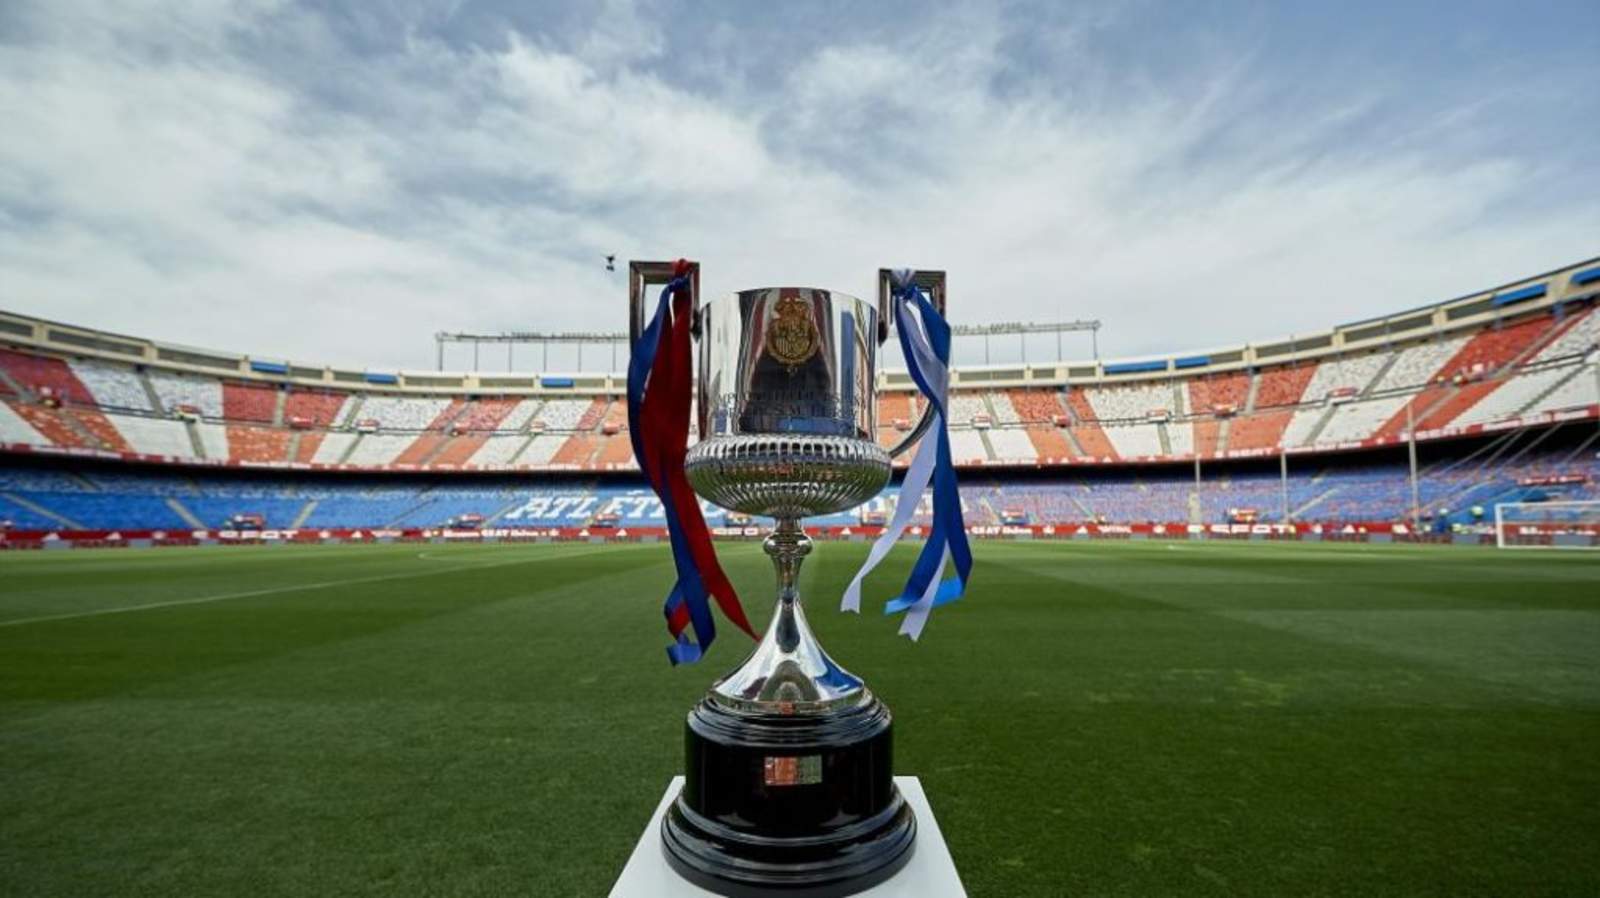 Levante-Barcelona, Real Madrid-Leganés y Girona-Atlético de Madrid son los enfrentamientos más destacados de los octavos de final de la Copa del Rey. (Especial)